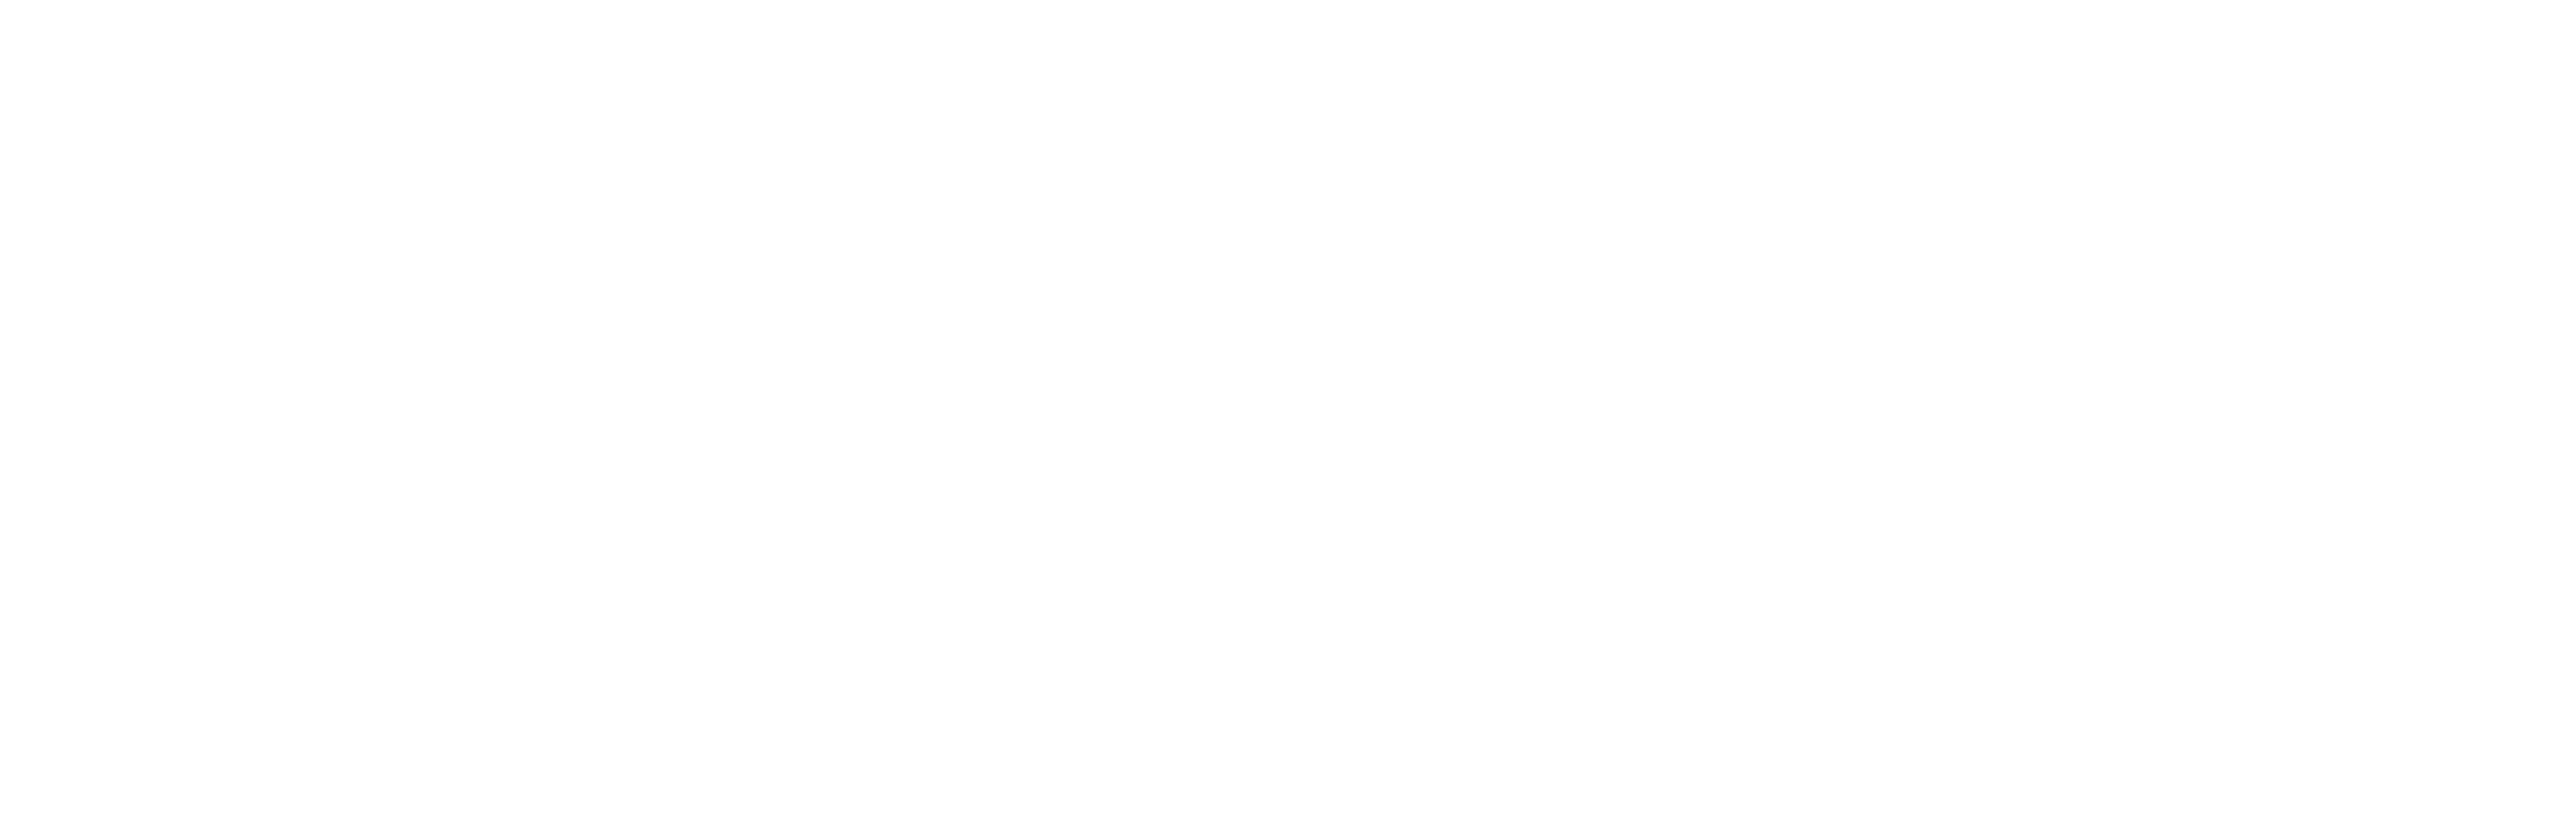 Dr. Stil Dental-Shop